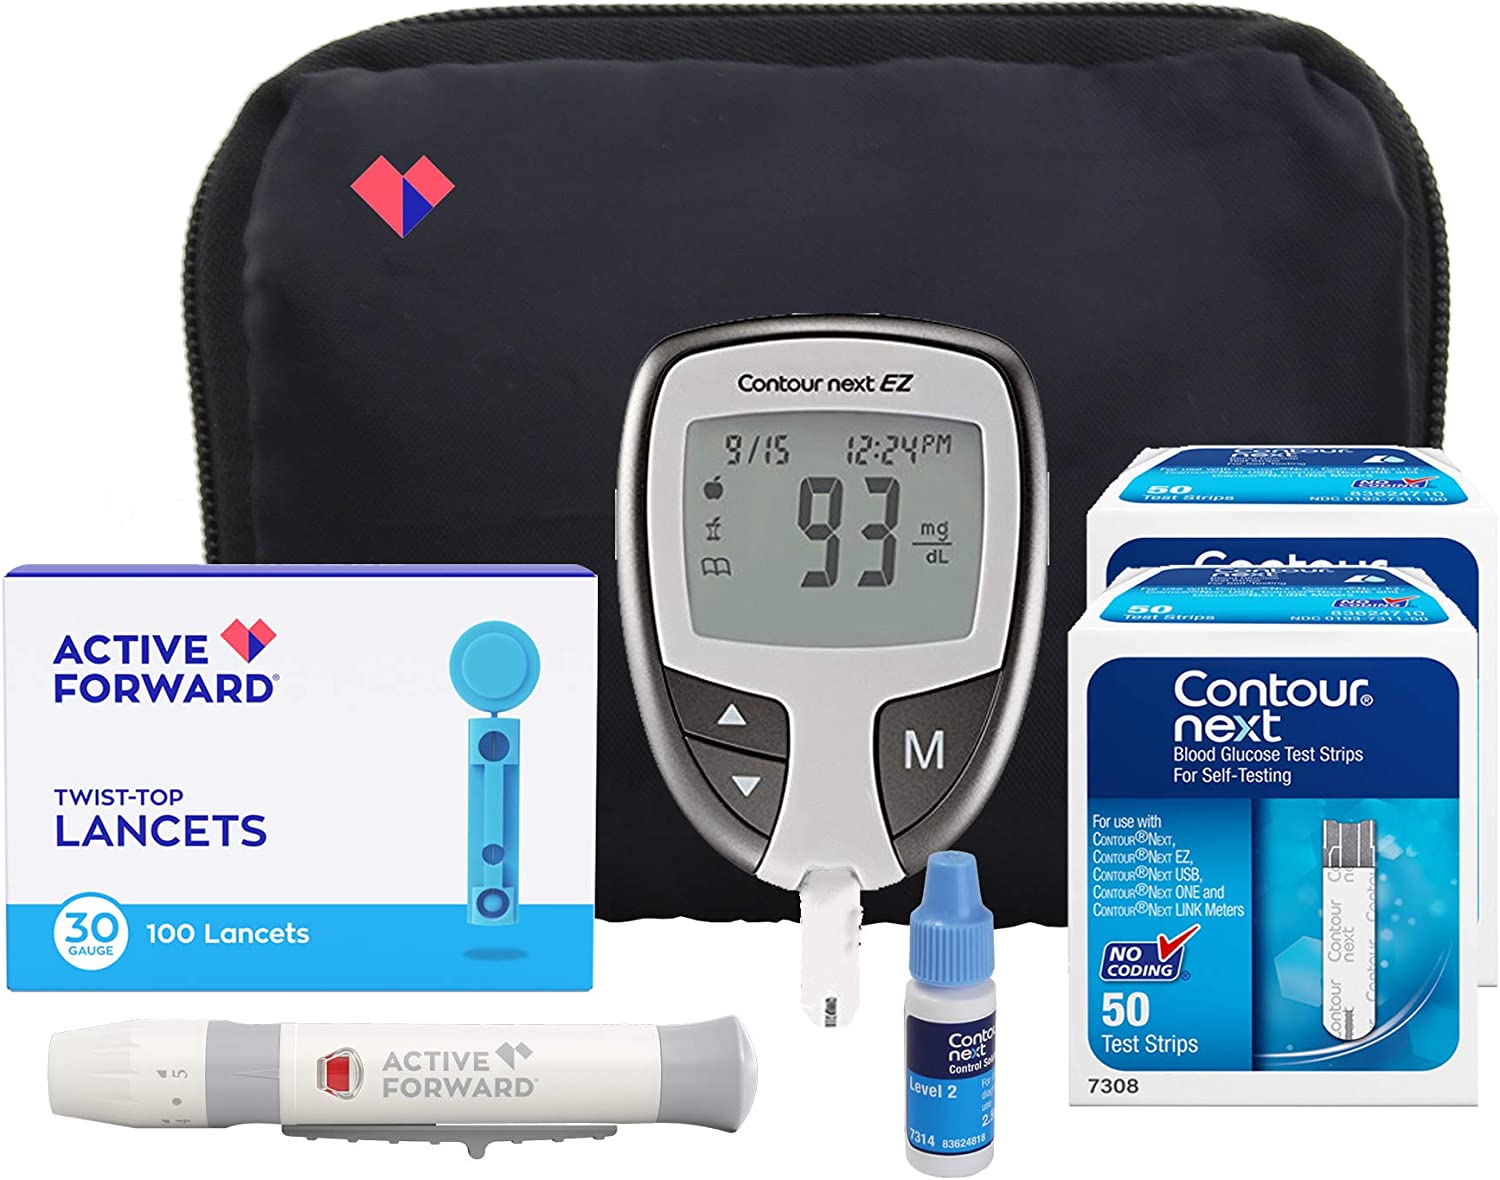 Contour NEXT EZ Diabetes Testing Kit